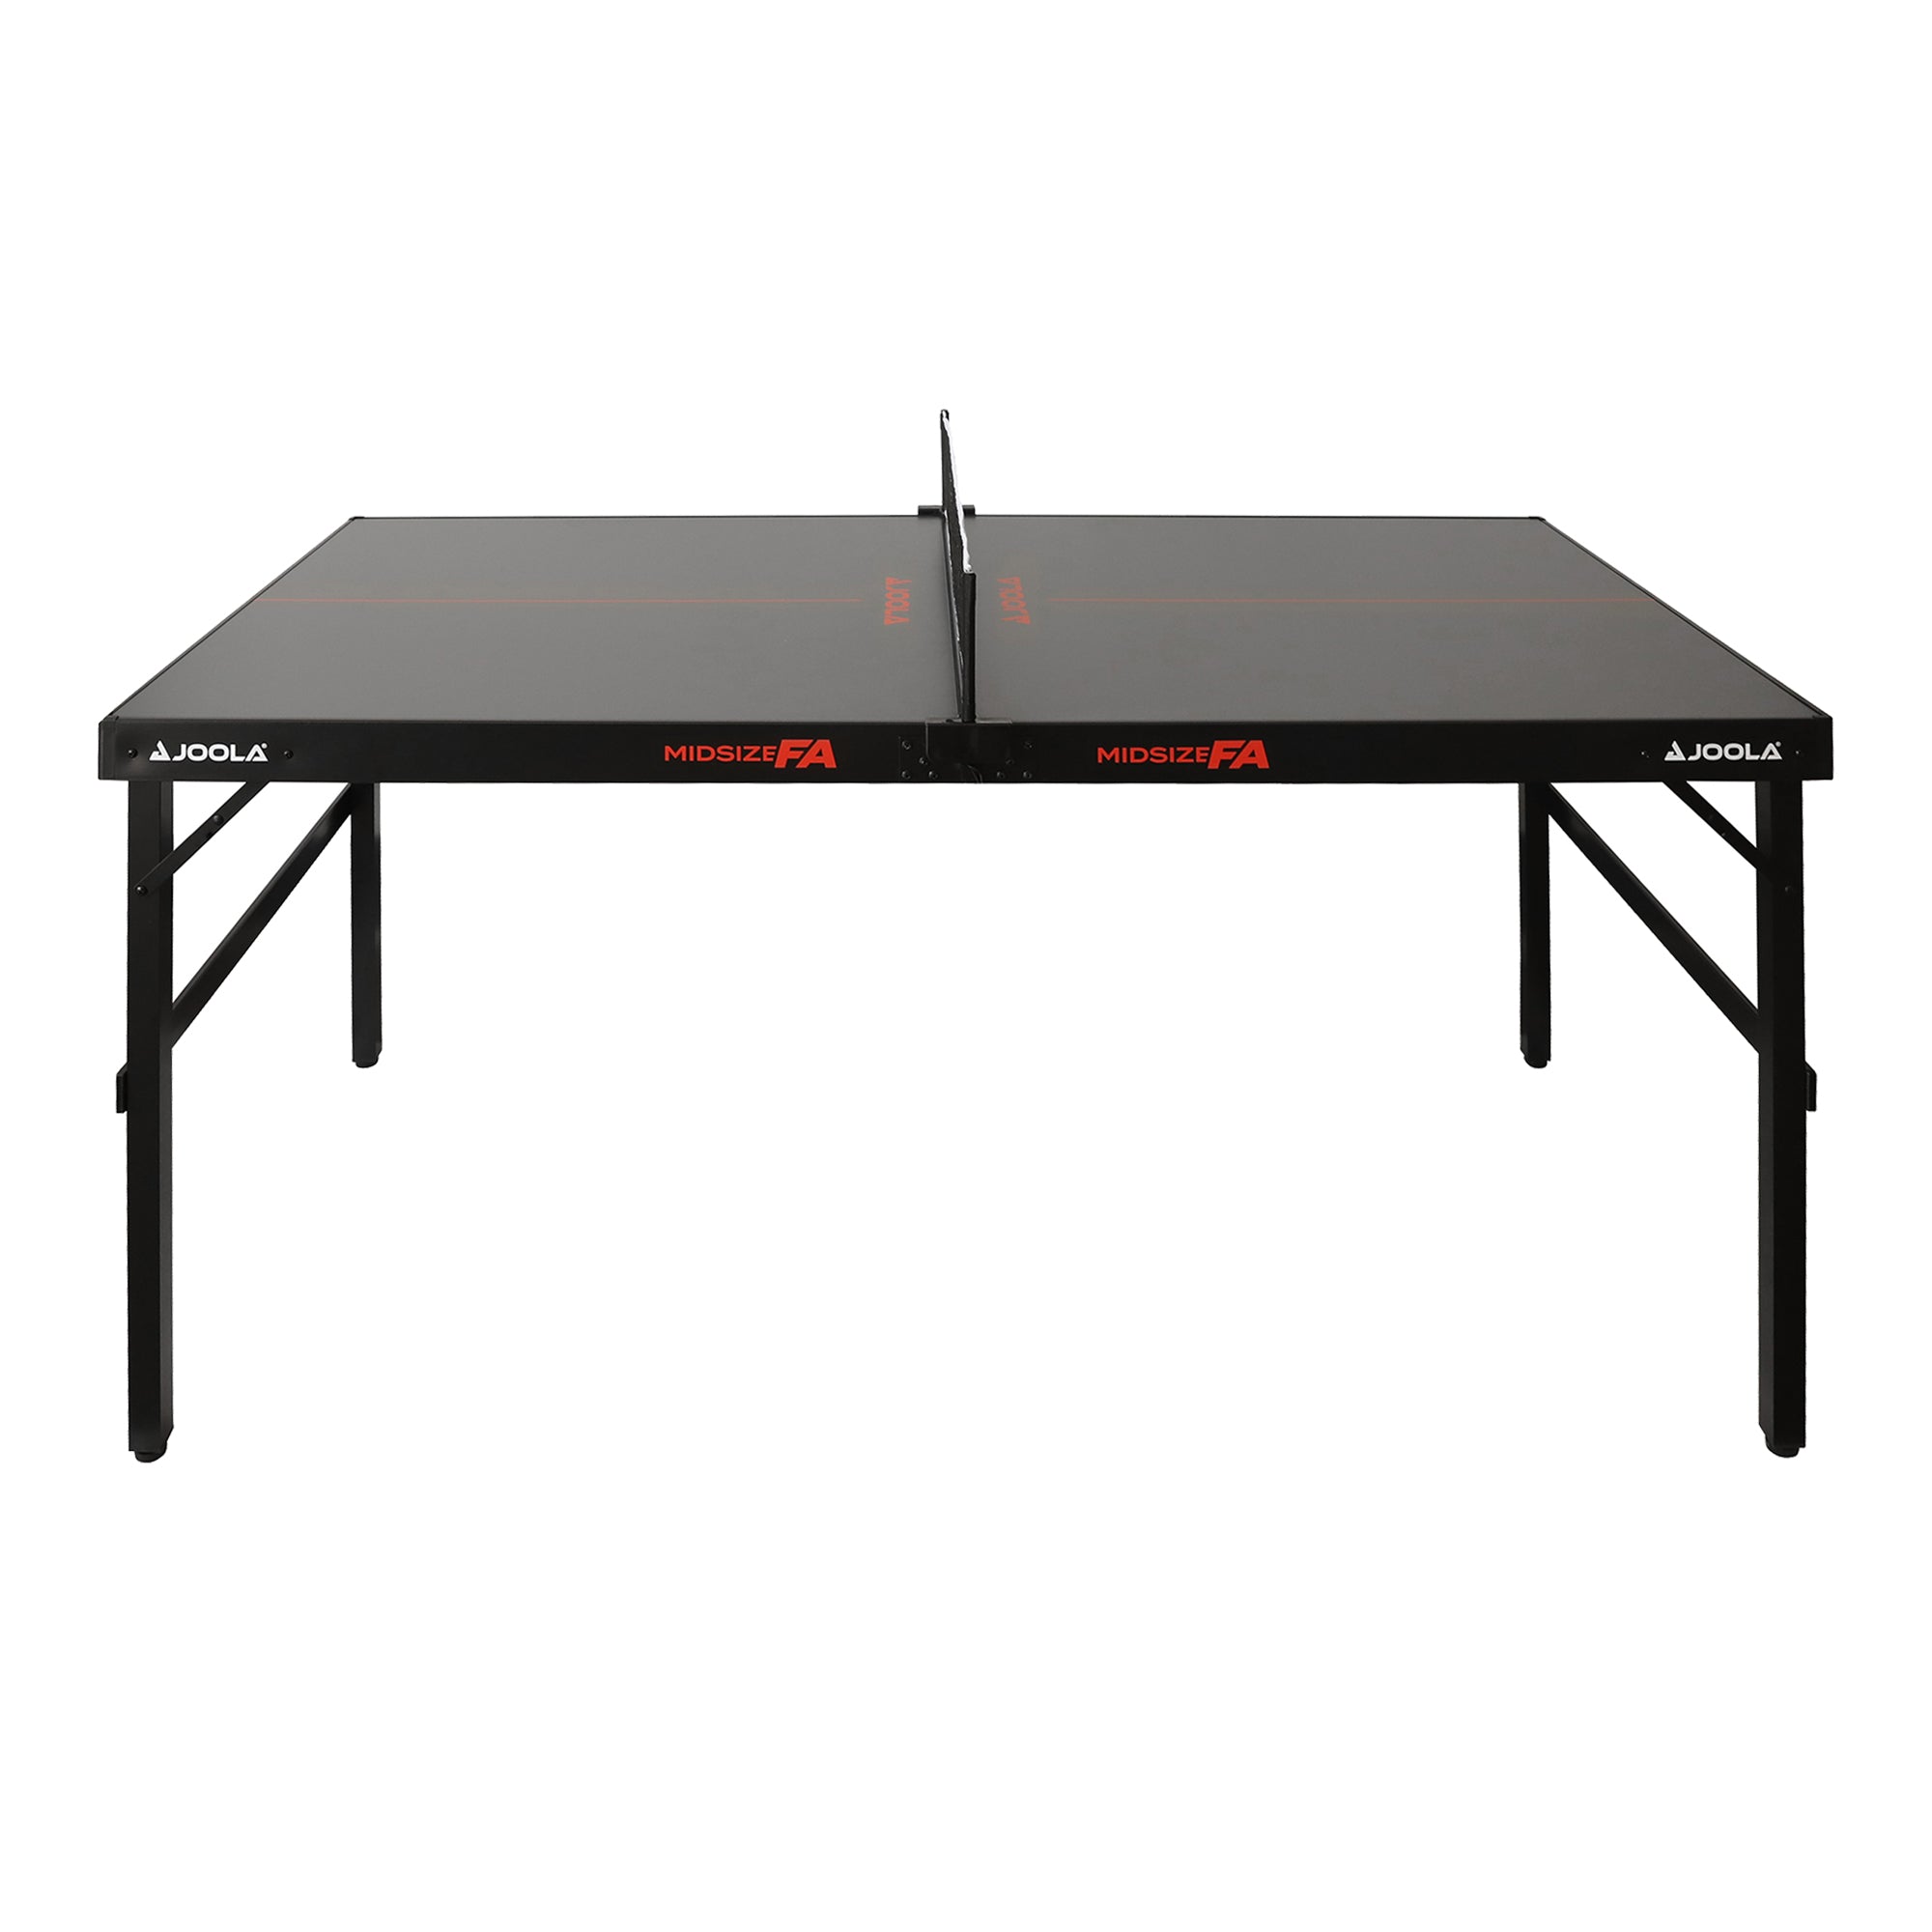 FA JOOLA Table Midsize Tennis Table